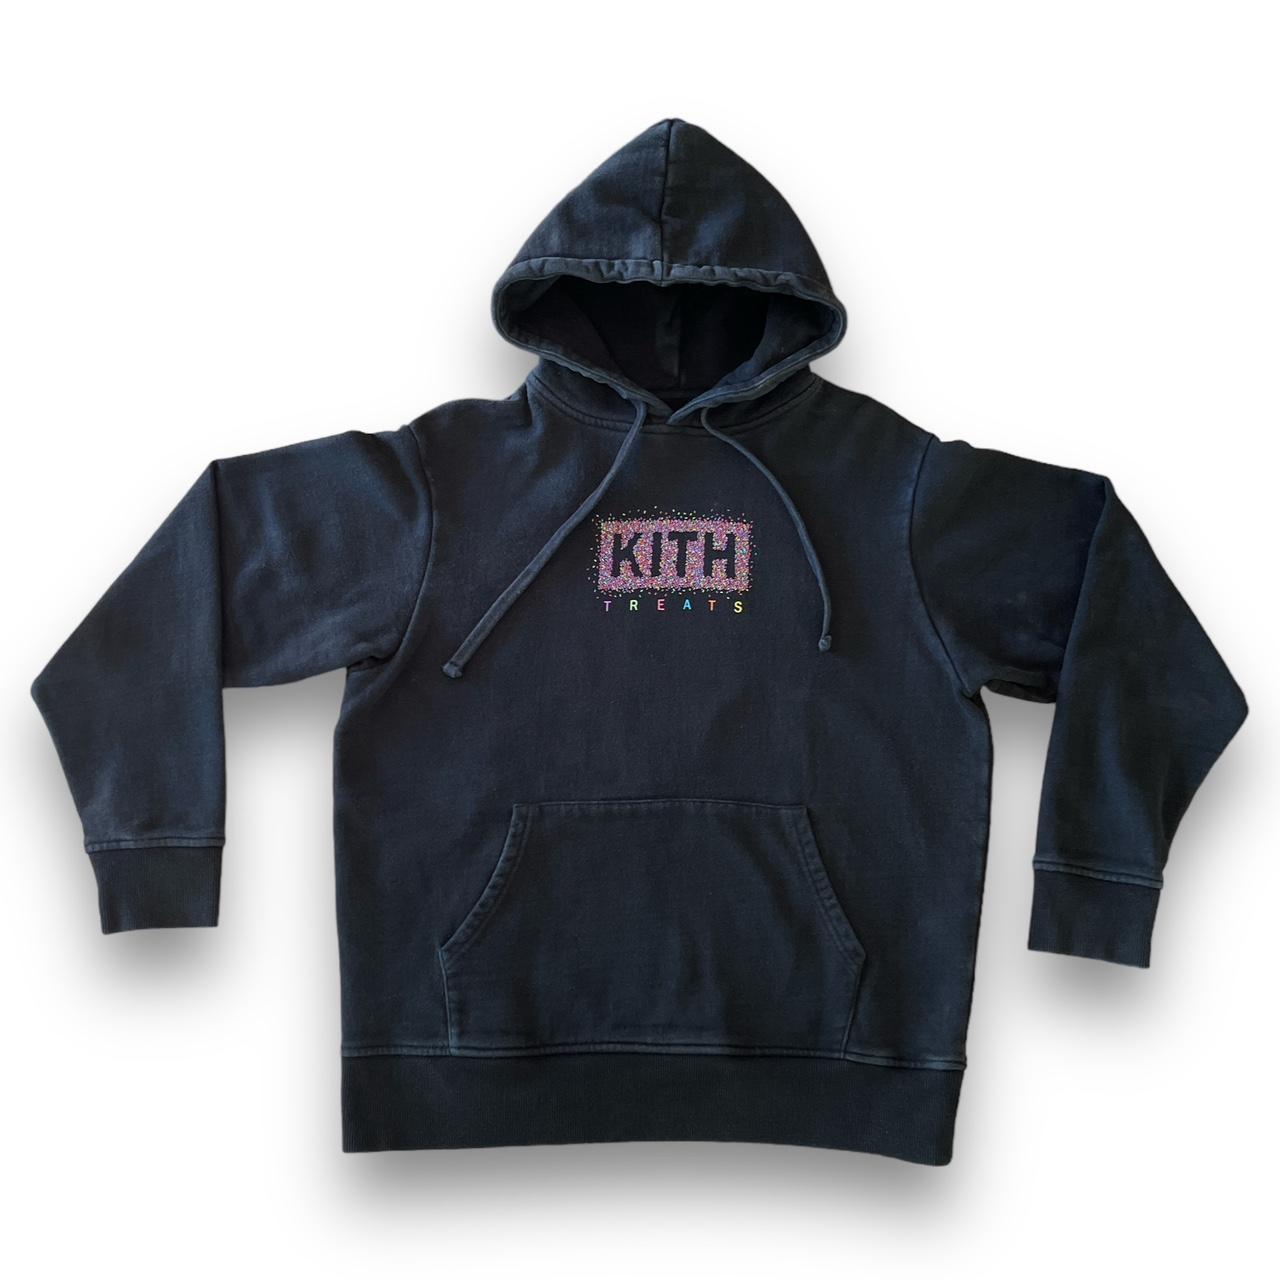 売れてます KITH treats sprinkle hooded | www.artfive.co.jp